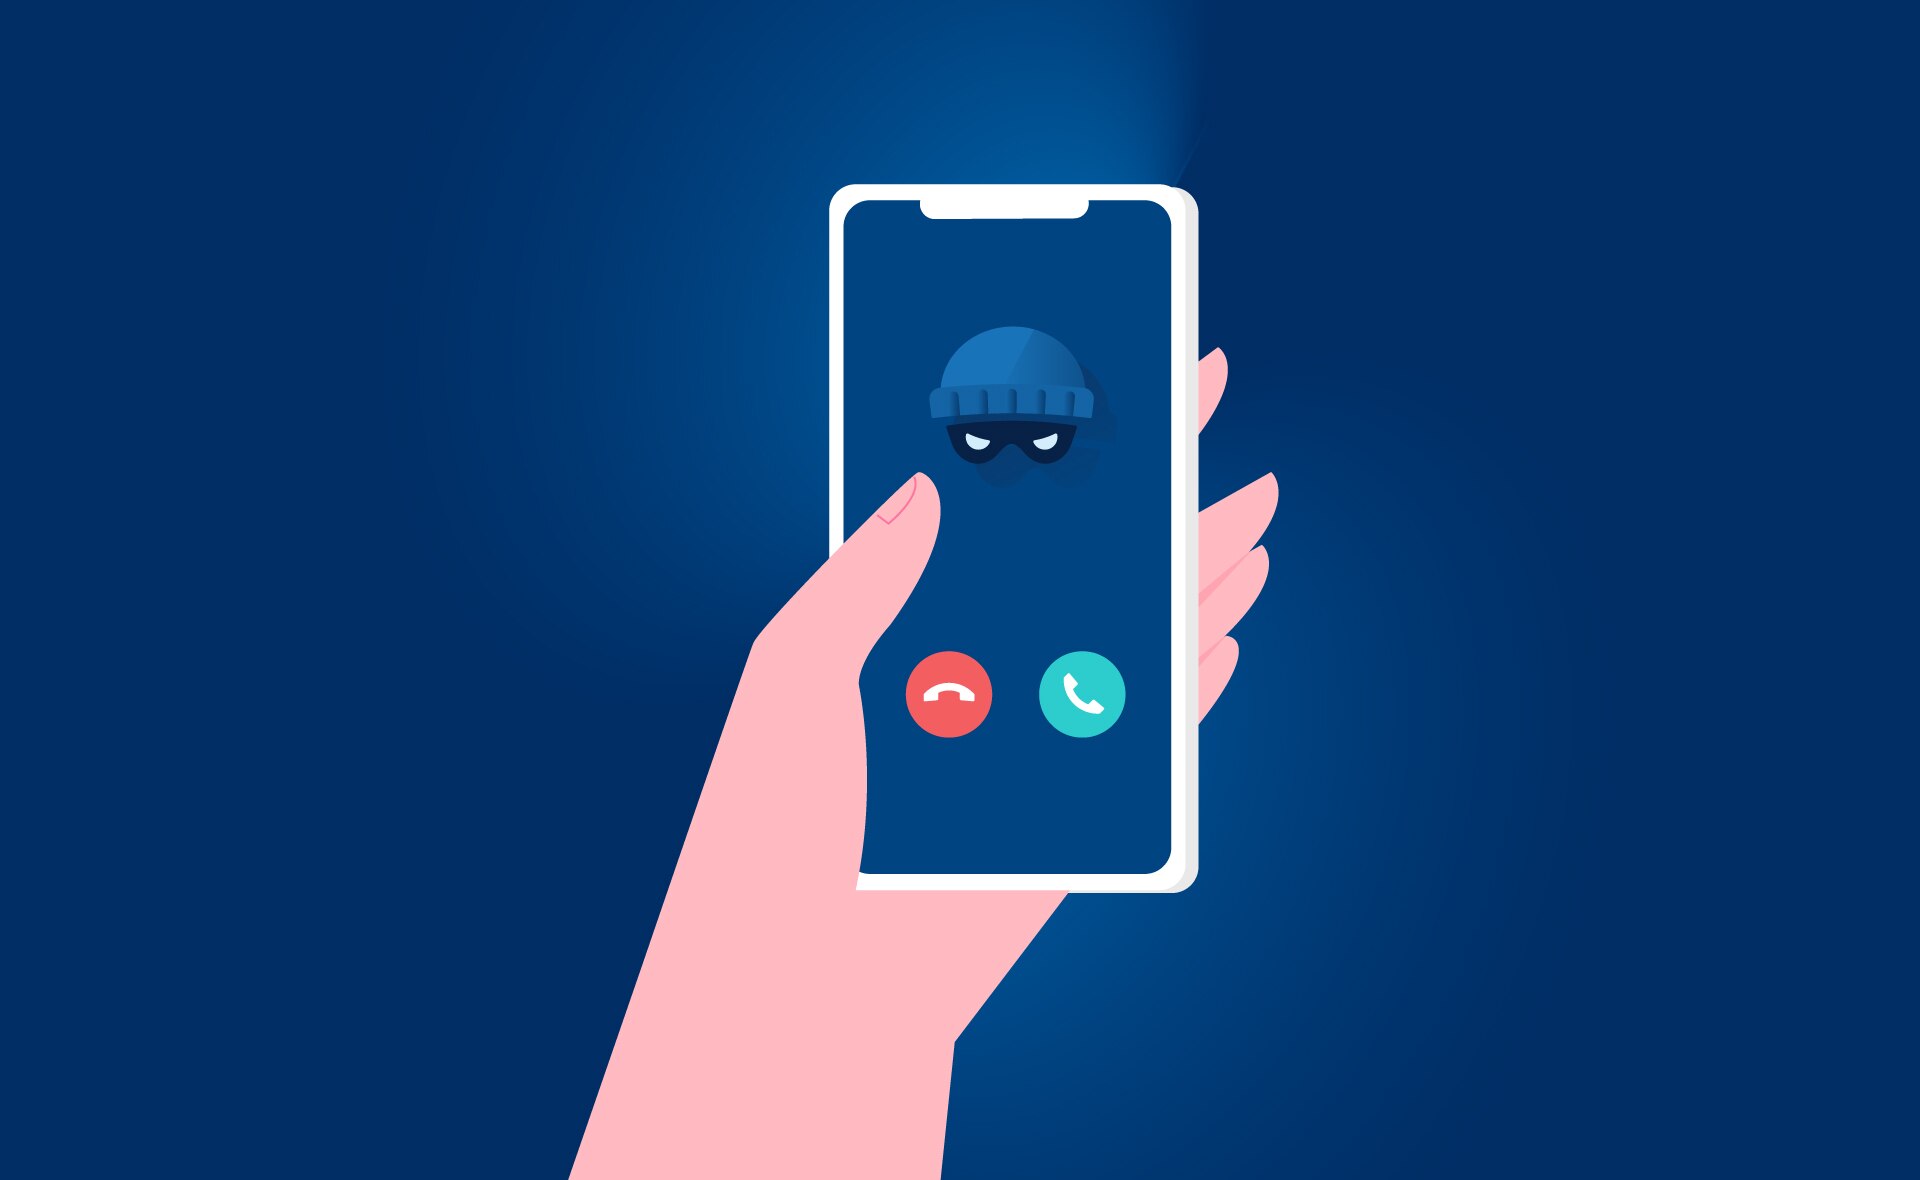 Venta telefónica de falsos servicios: este ‘vishing’ es un mal negocio